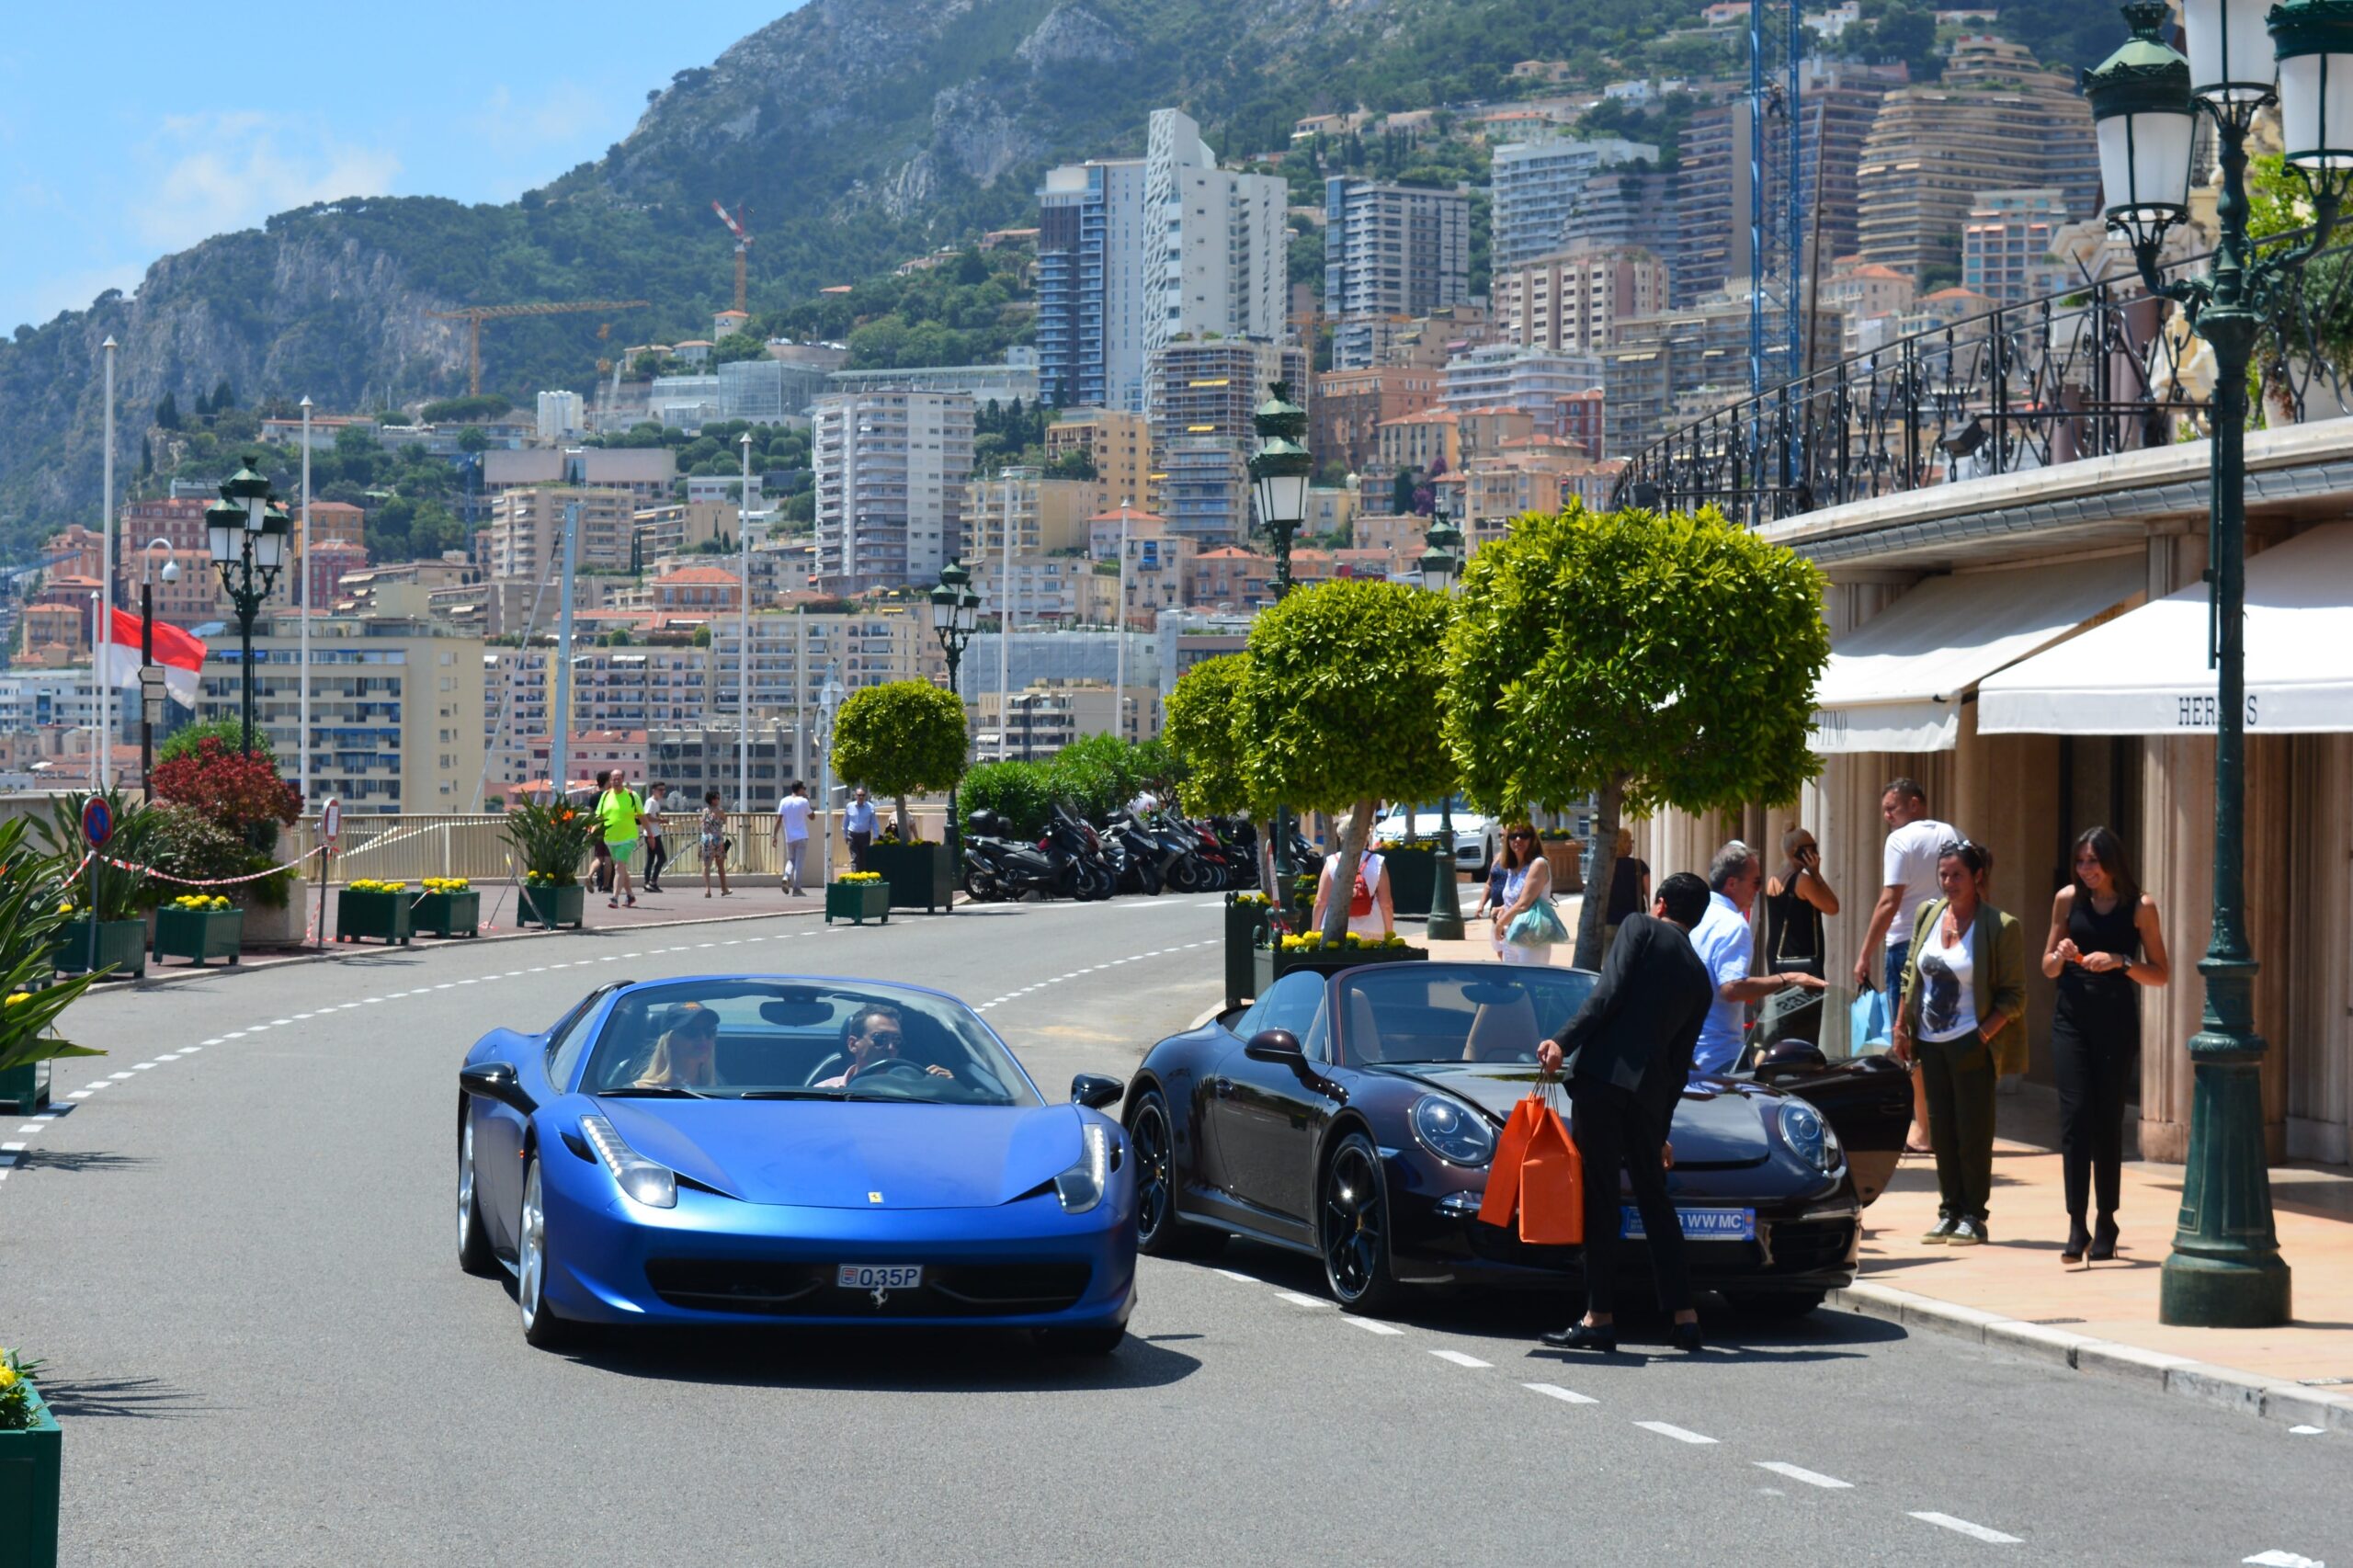 Monaco. A Ferrari and a Porsche in Monaco